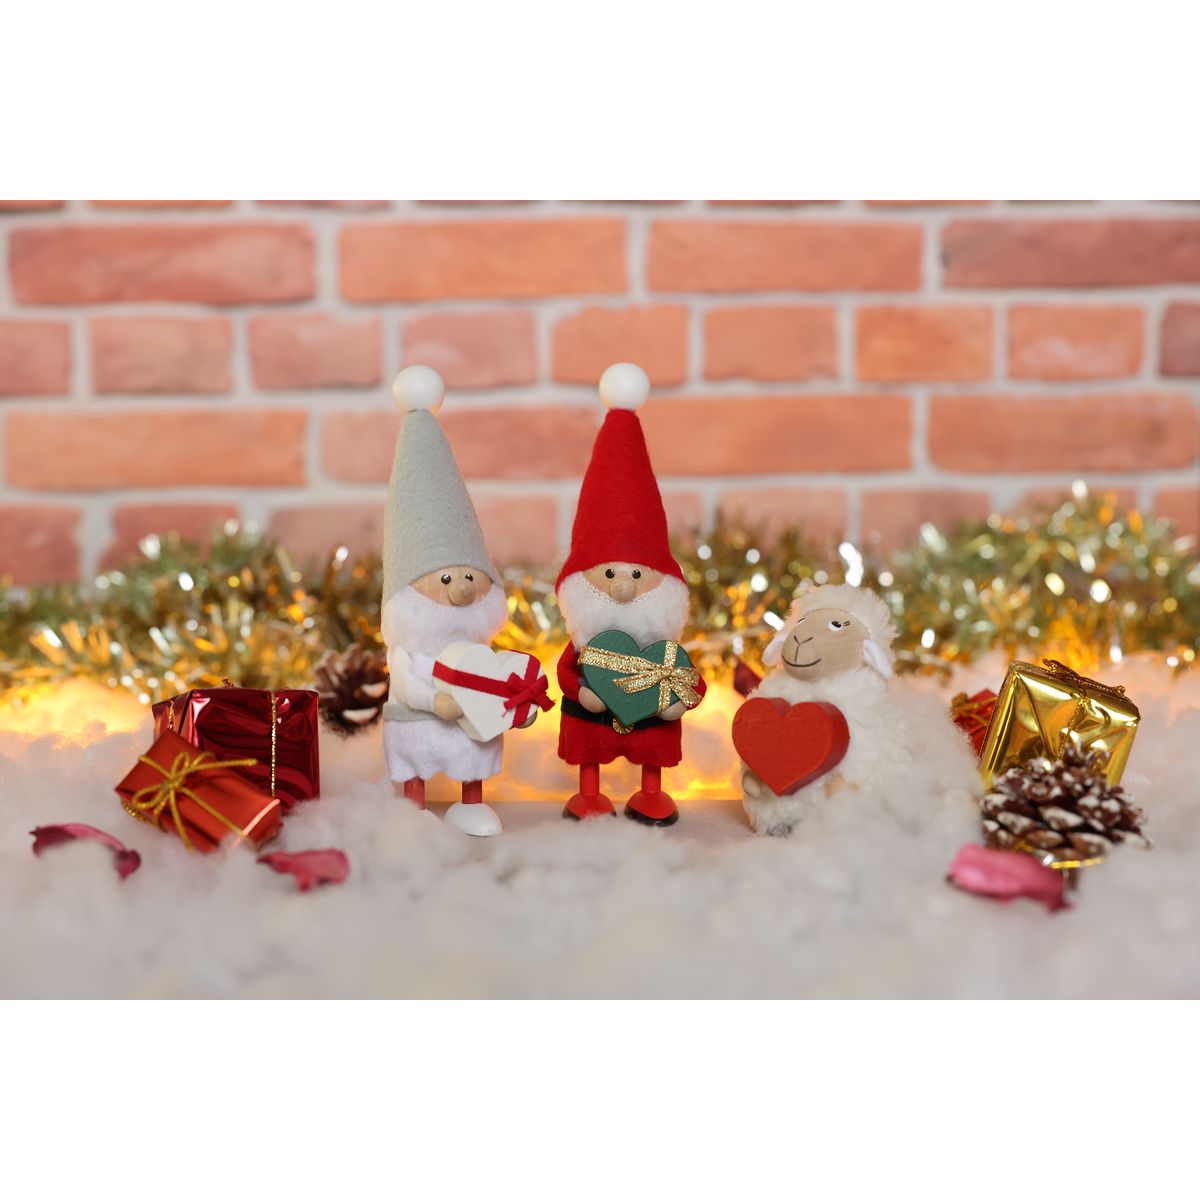 ノルディカ ニッセ クリスマス 木製人形 ハートフルサンタ　サイレントナイト ホワイト×レッド